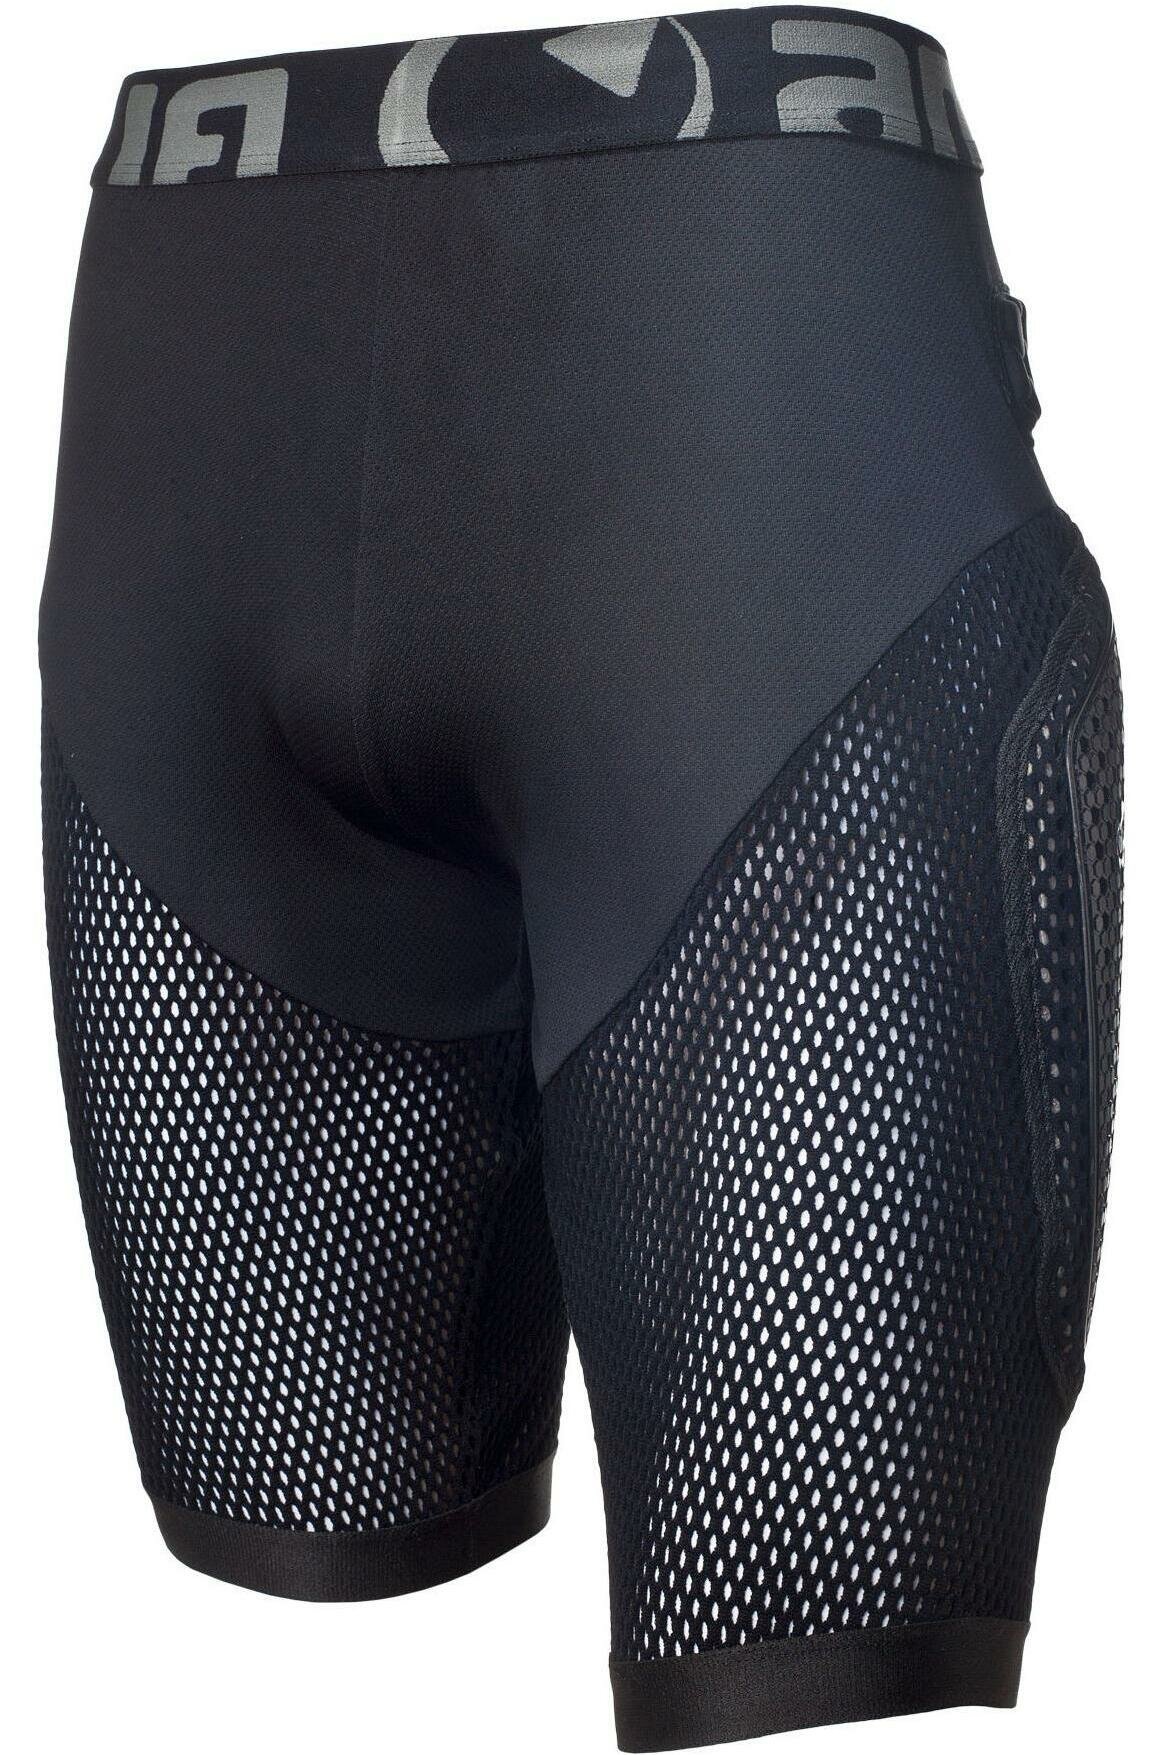 Защитные шорты Amplifi Fuse Pant Black (US: L)